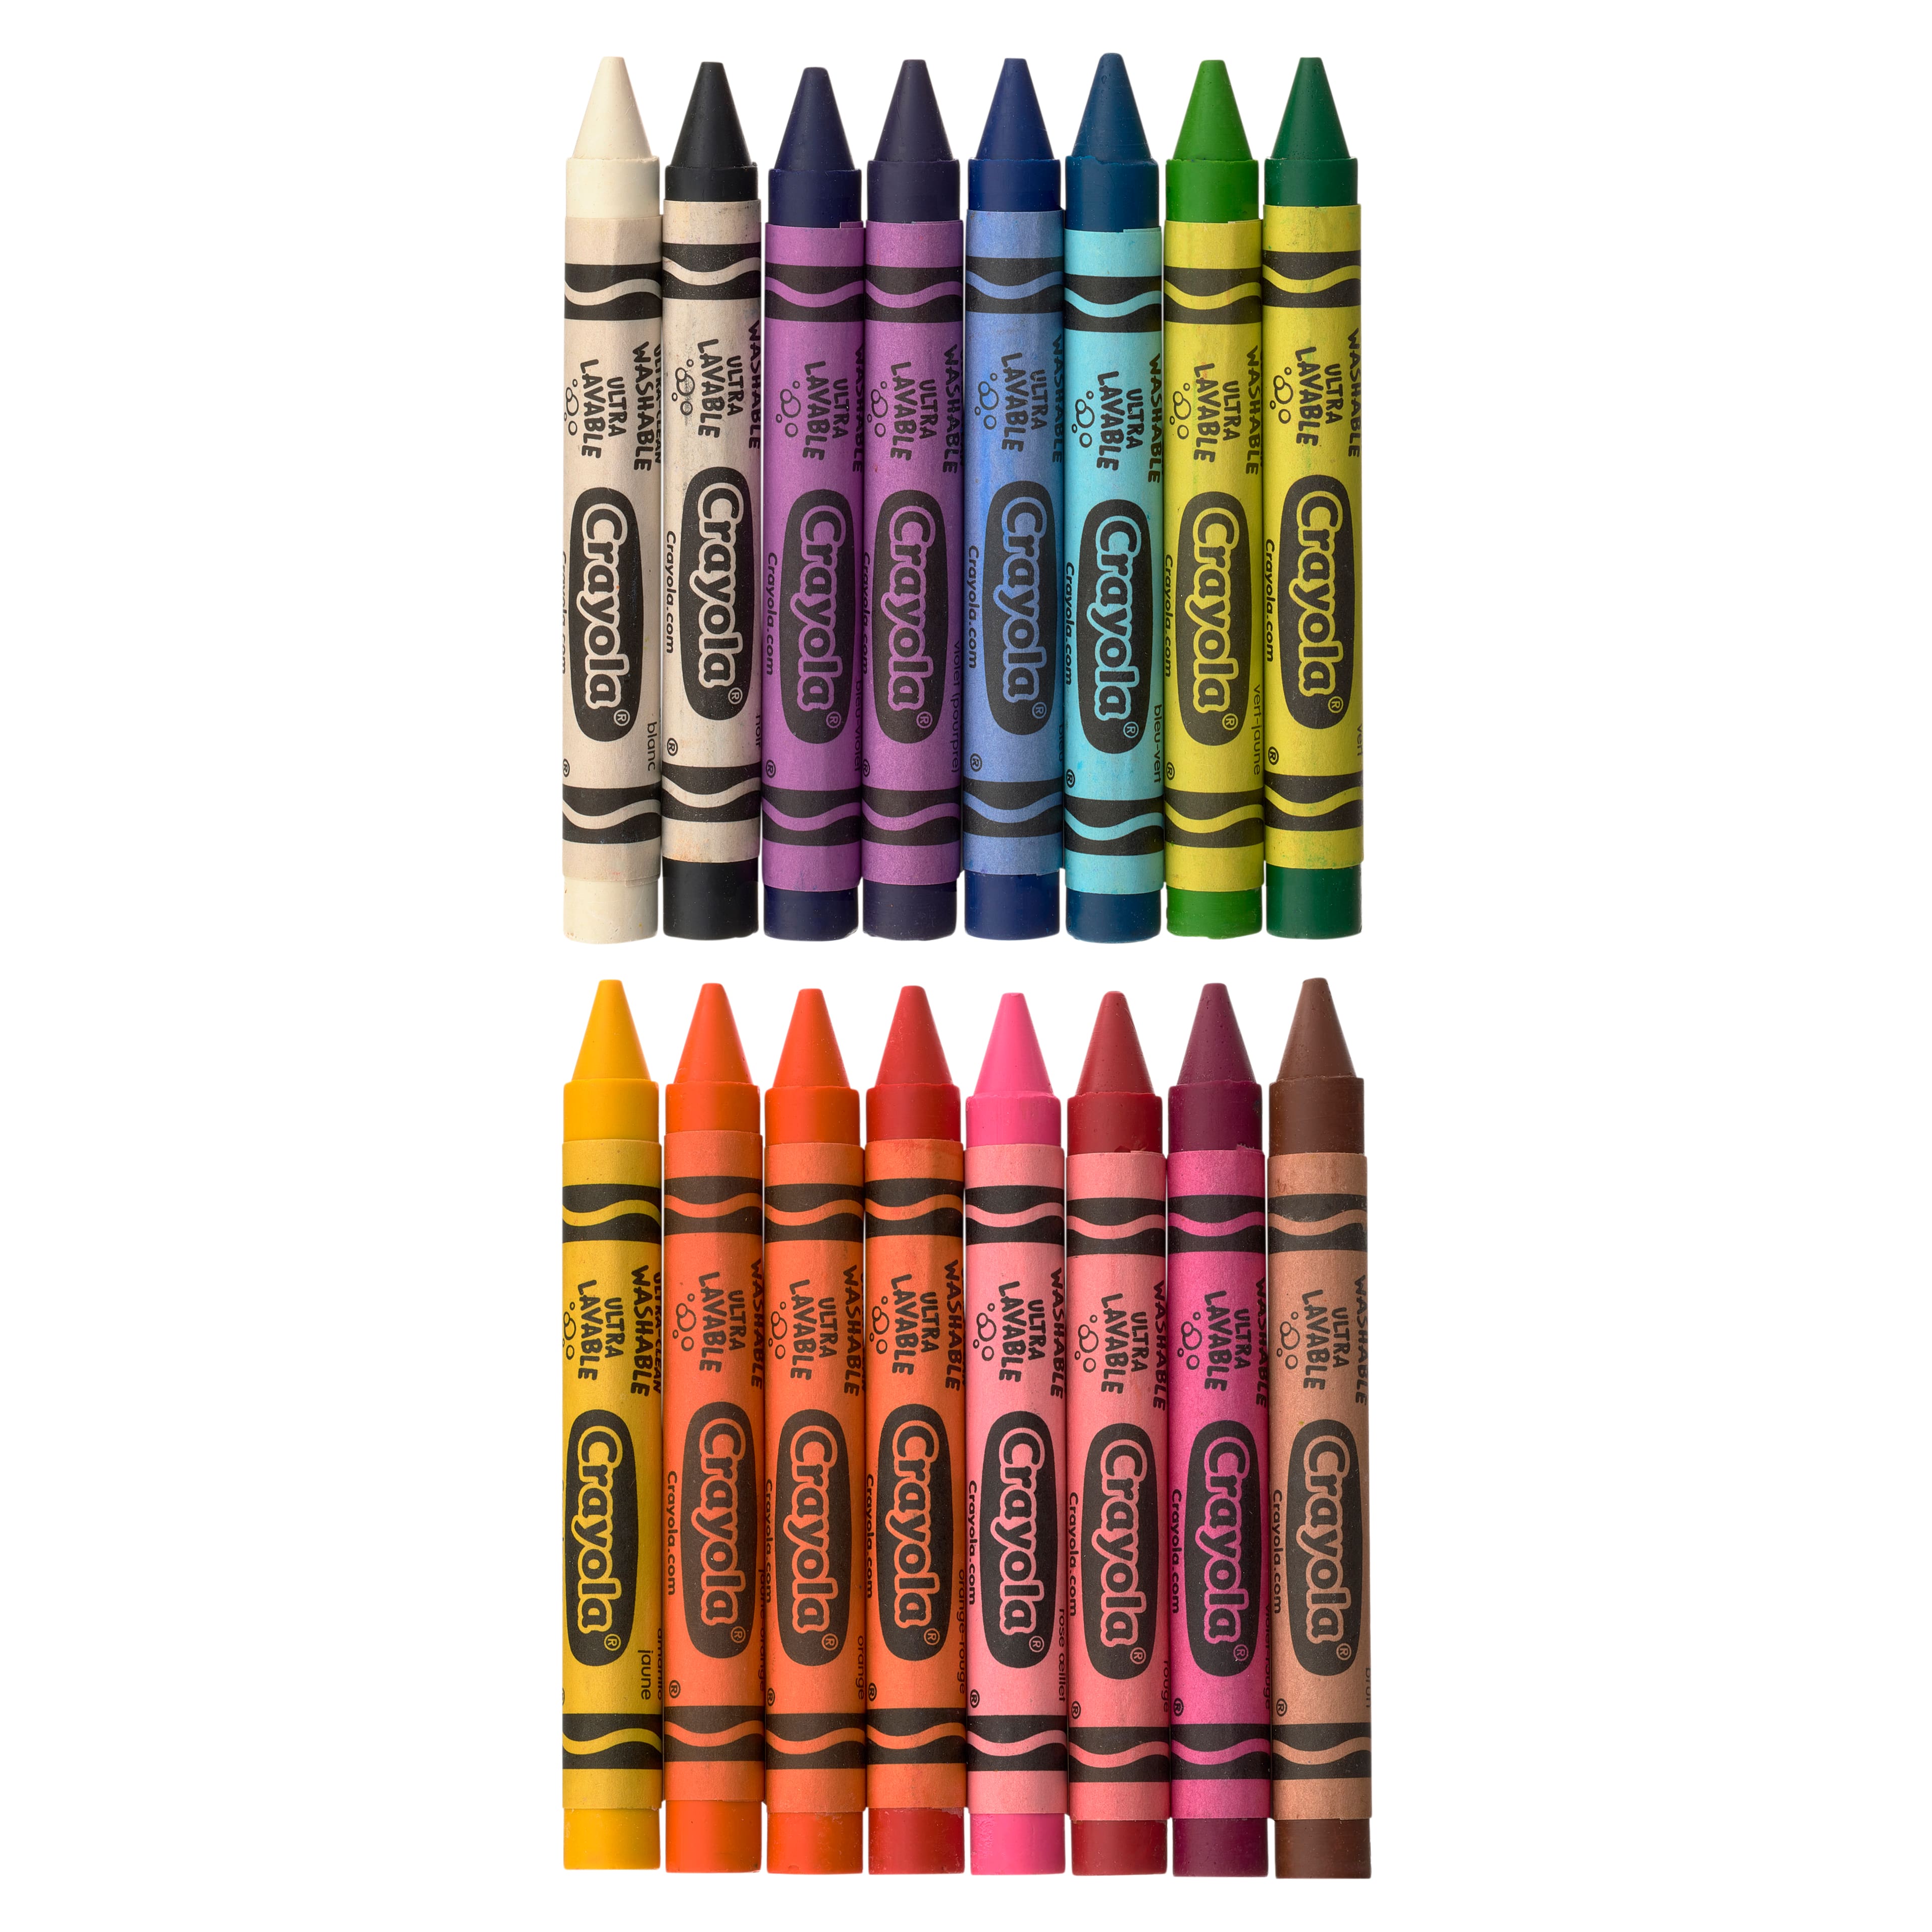 Crayola 16 Large Washable Crayons